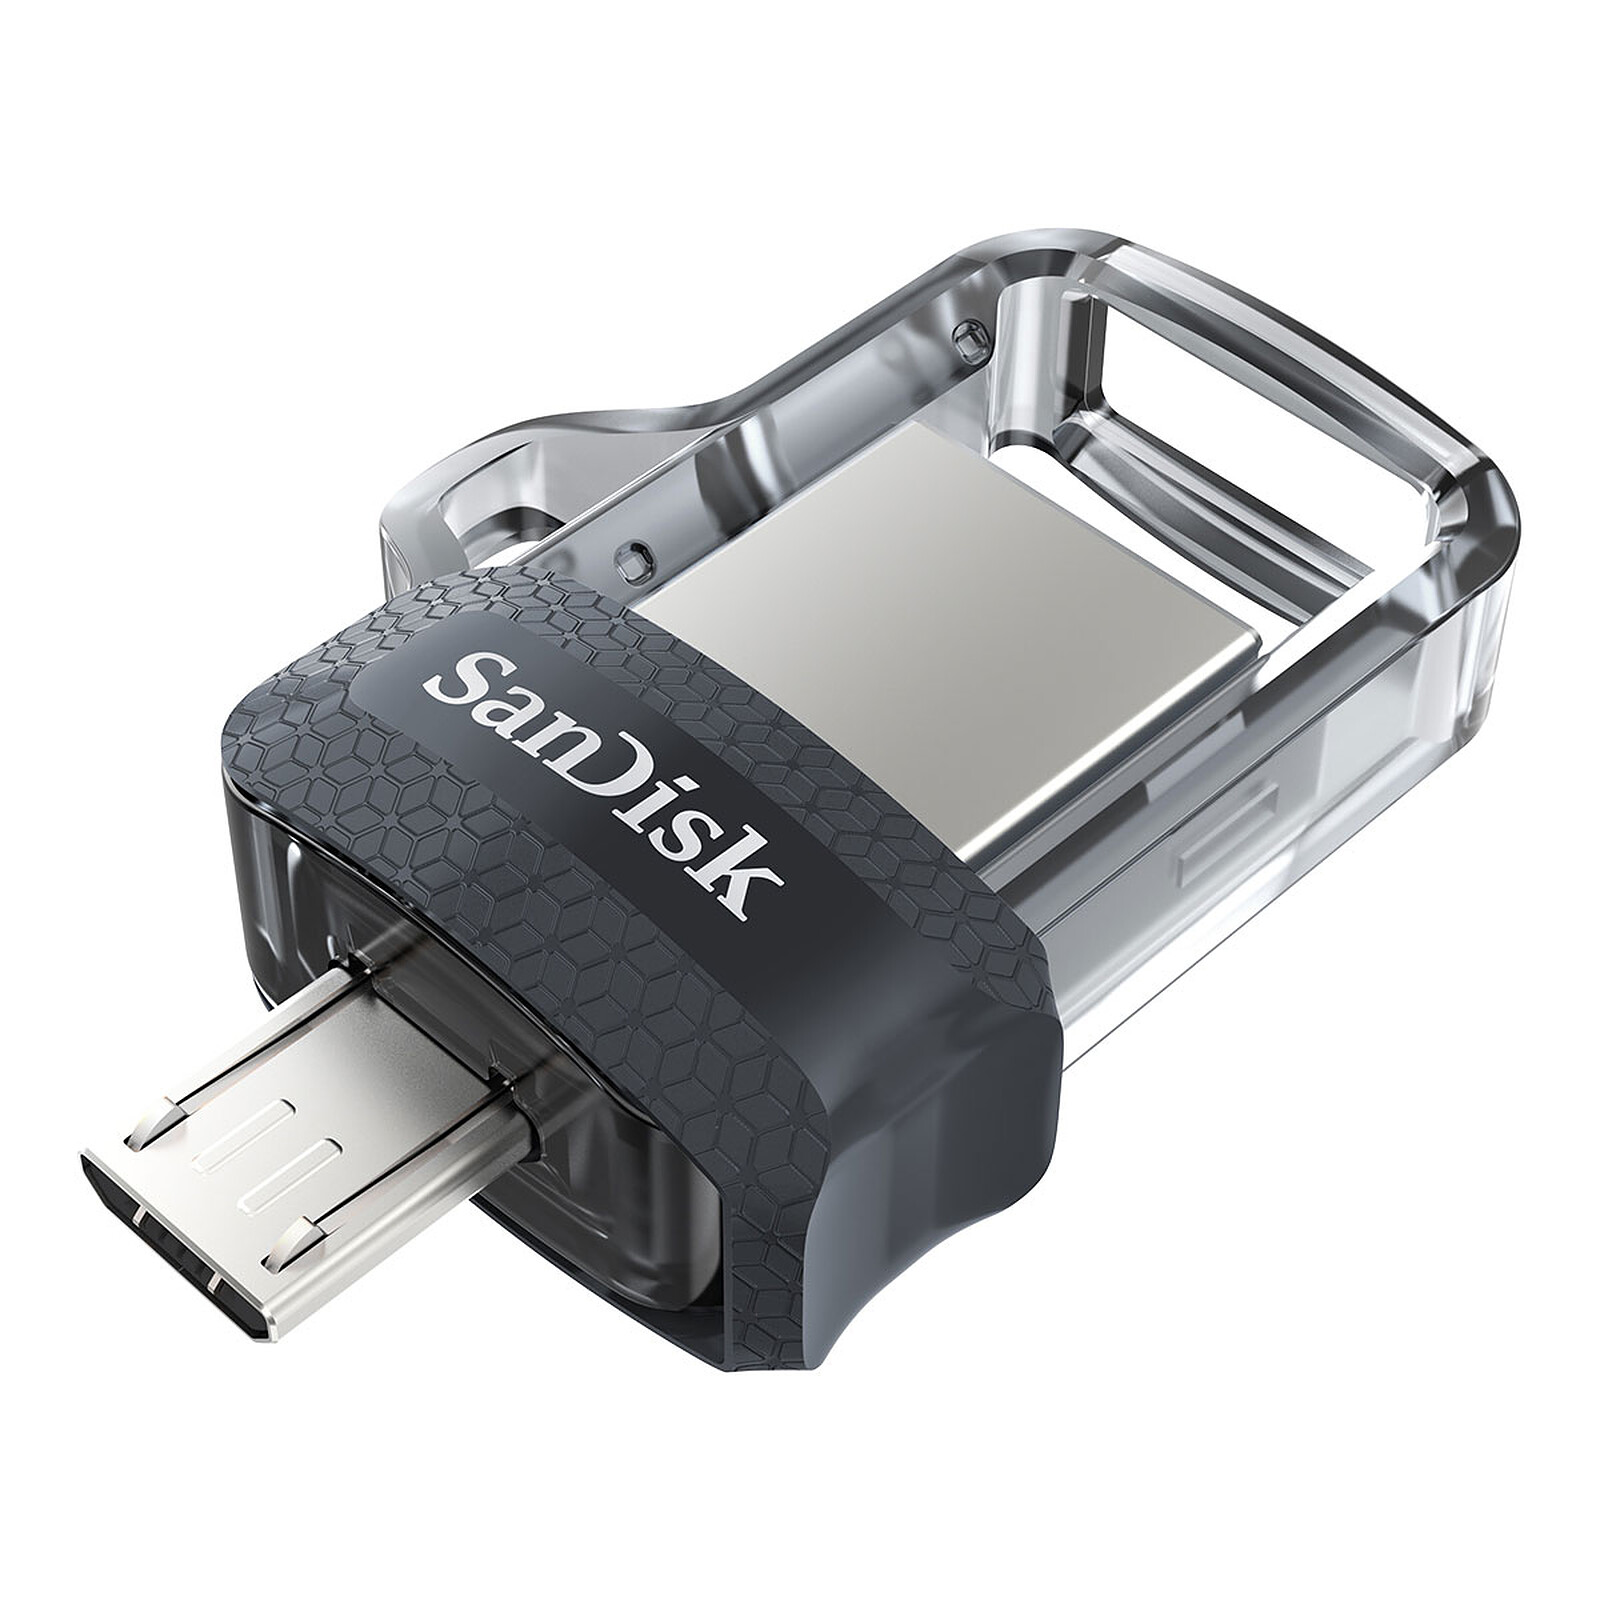 Totalcadeau - Clé USB 128 Go USB 2.0 Blanc/noir Capacité - 64 GB